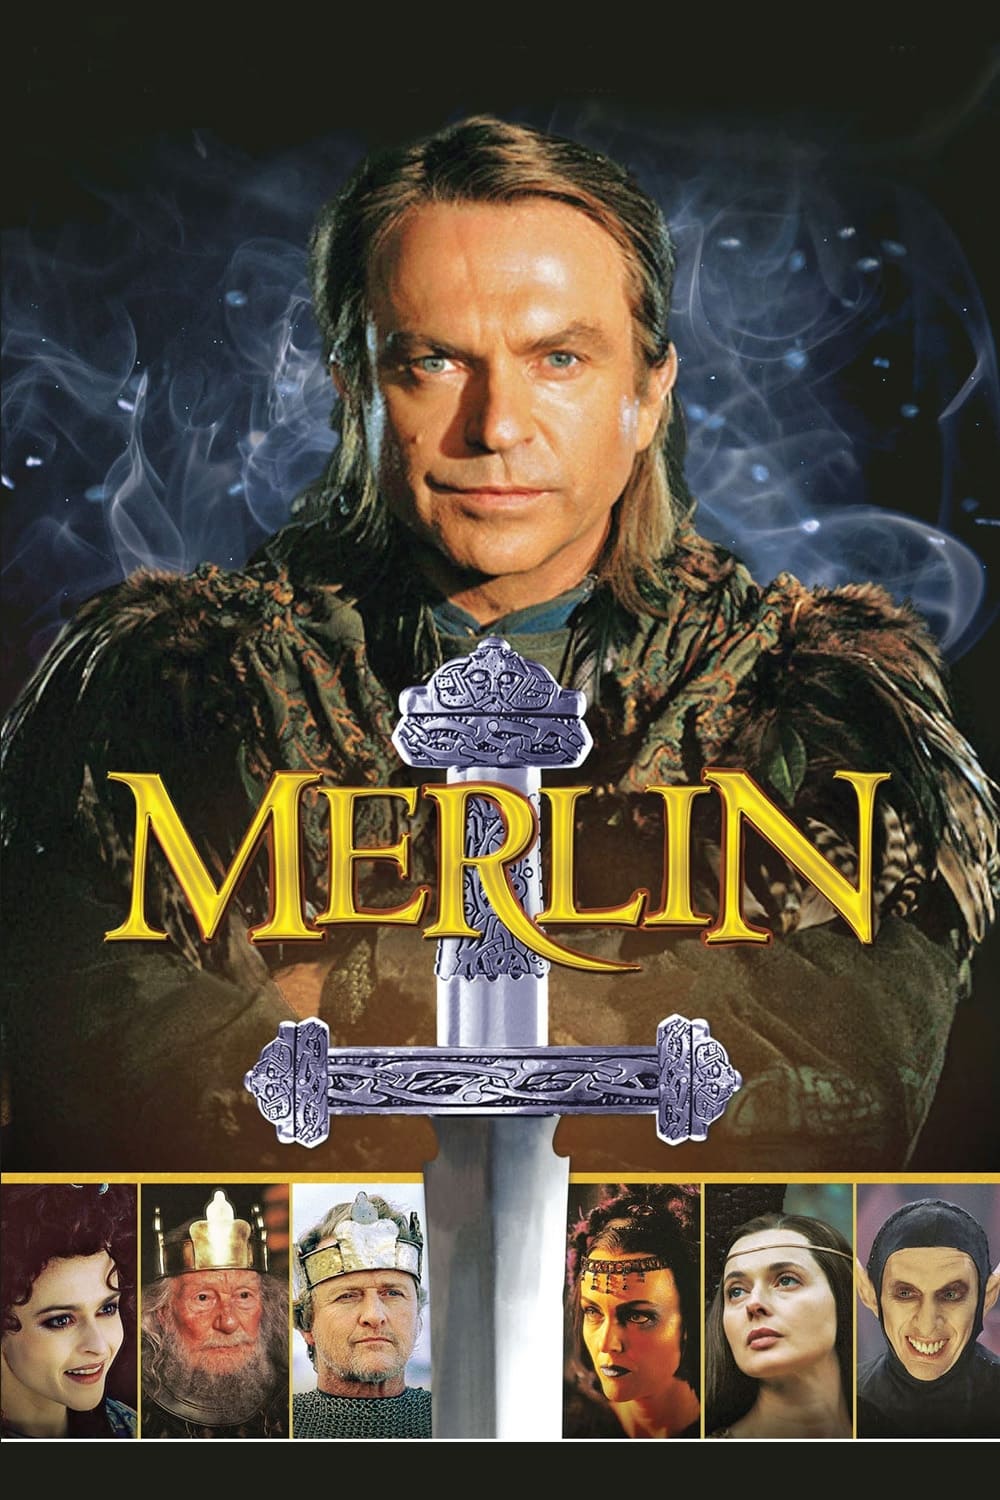 Plakát pro film “Merlin”